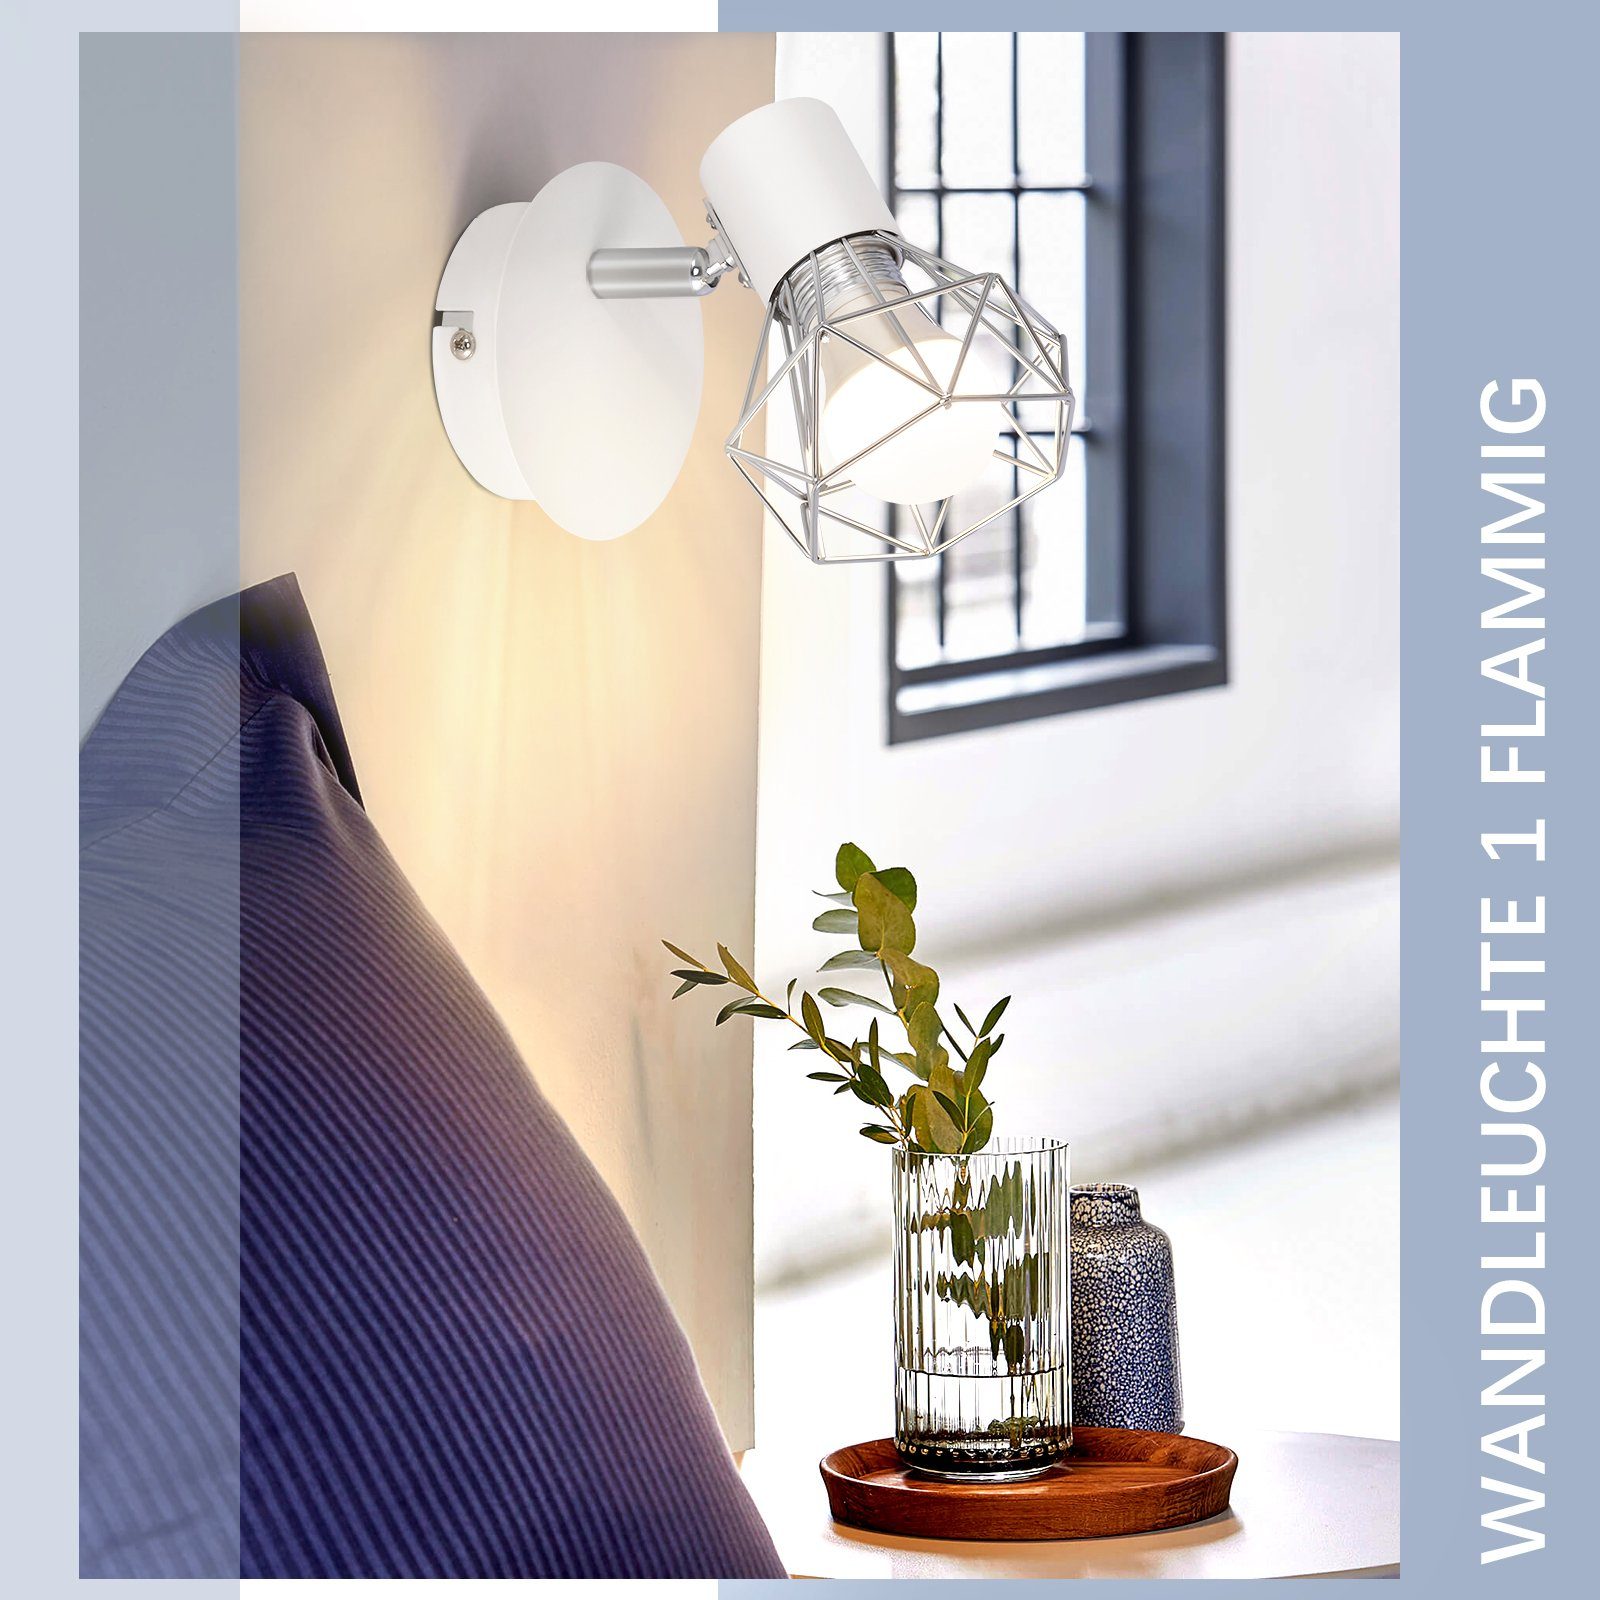 integriert, LED fest 350° Retro, Weiß Vintage ZMH Verstellbare Deckenleuchte - E14 OHNE Wandspot Leuchtmittel, Deckenstrahler